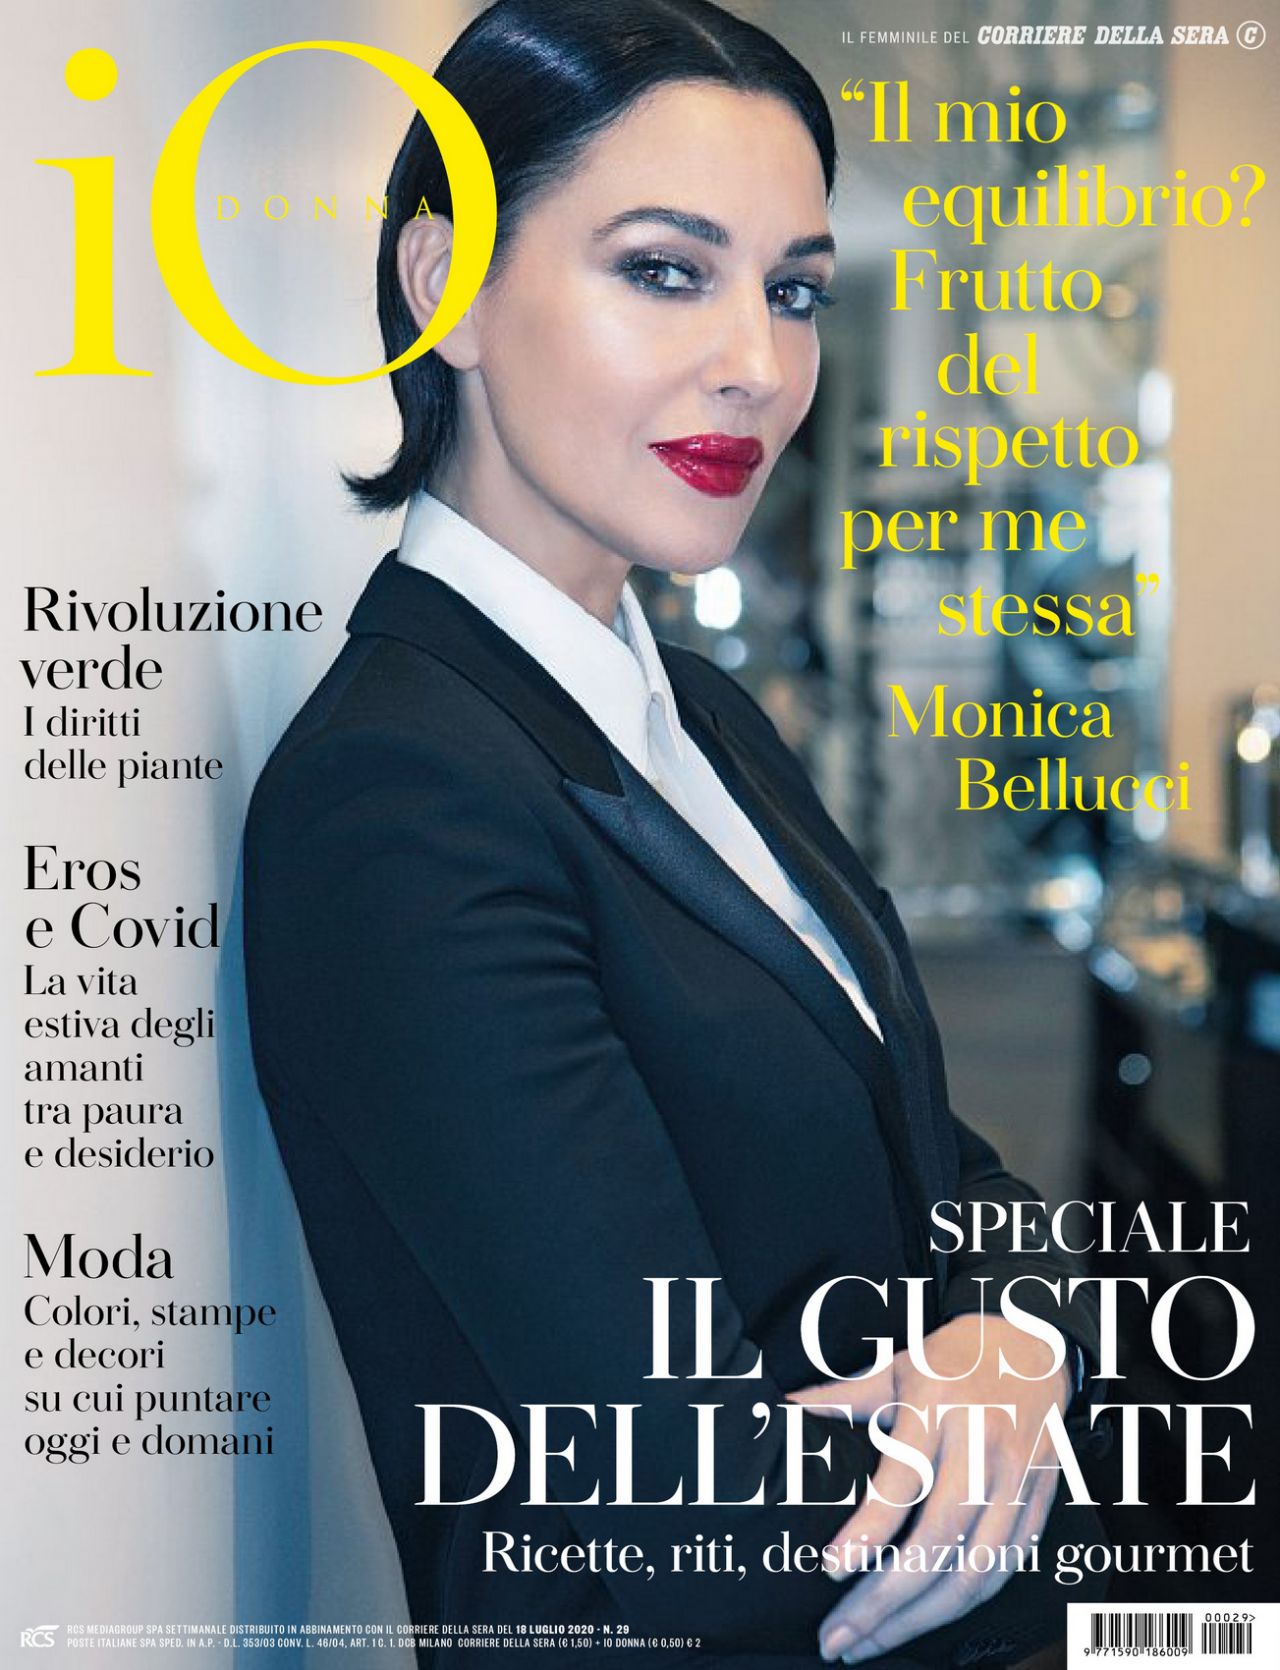 monica-bellucci-io-donna-del-corriere-della-sera-07-18-2020-issue-0.jpg